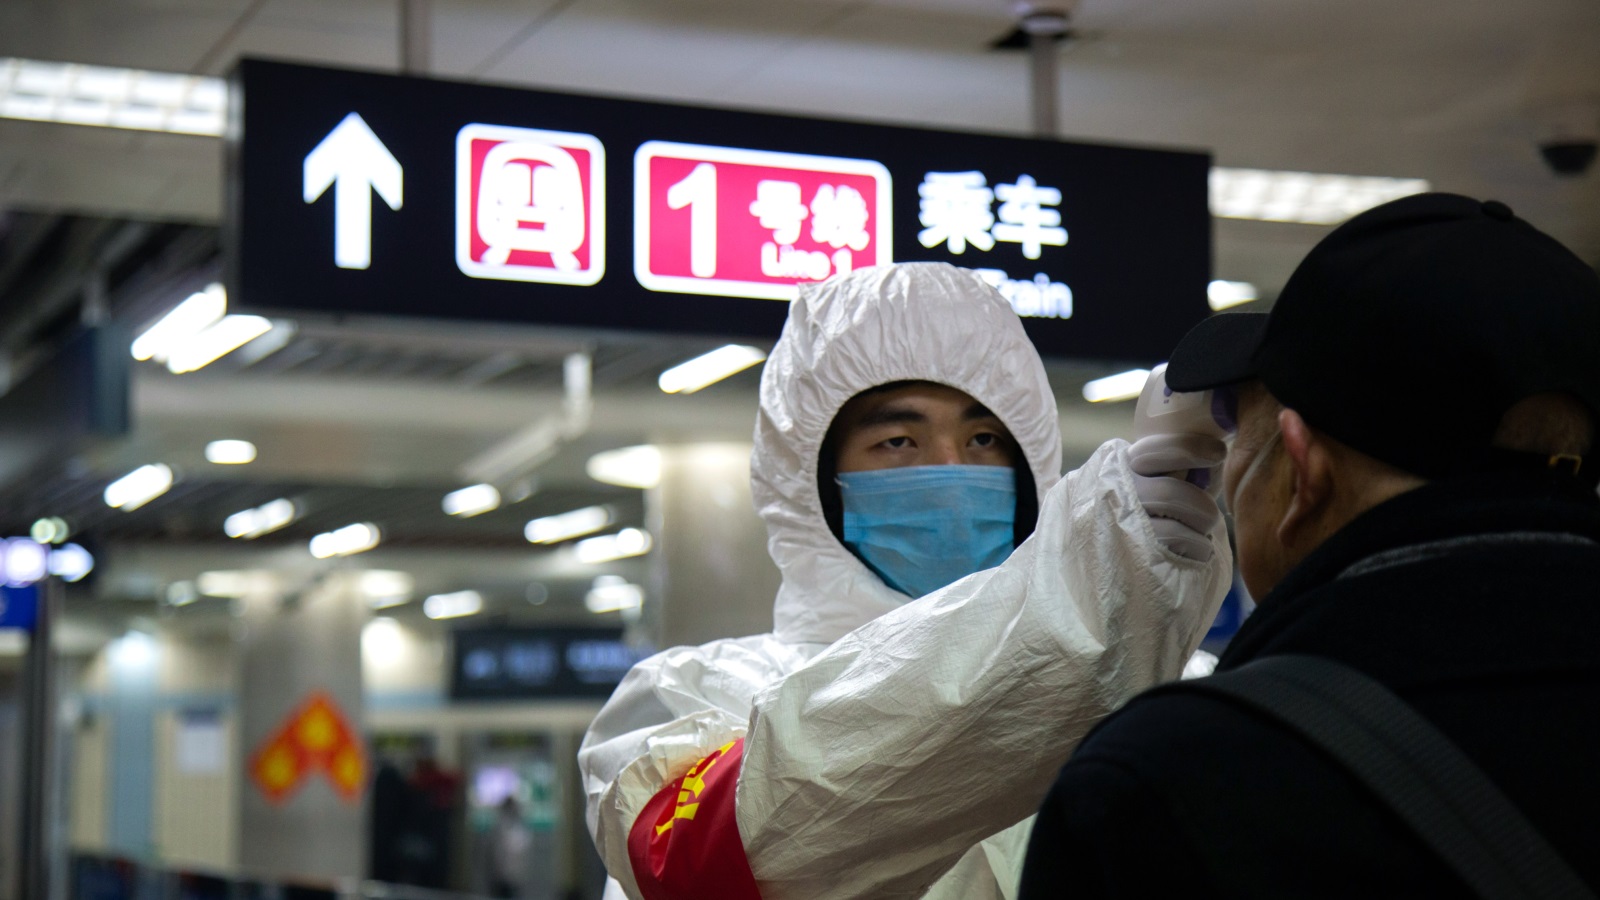 ‪أحد موظفي قطاع الصحة في الصين يفحص حرارة رجل تحسبا لإصابته بفيروس كورونا داخل محطة للمترو في بكين‬ (غيتي)